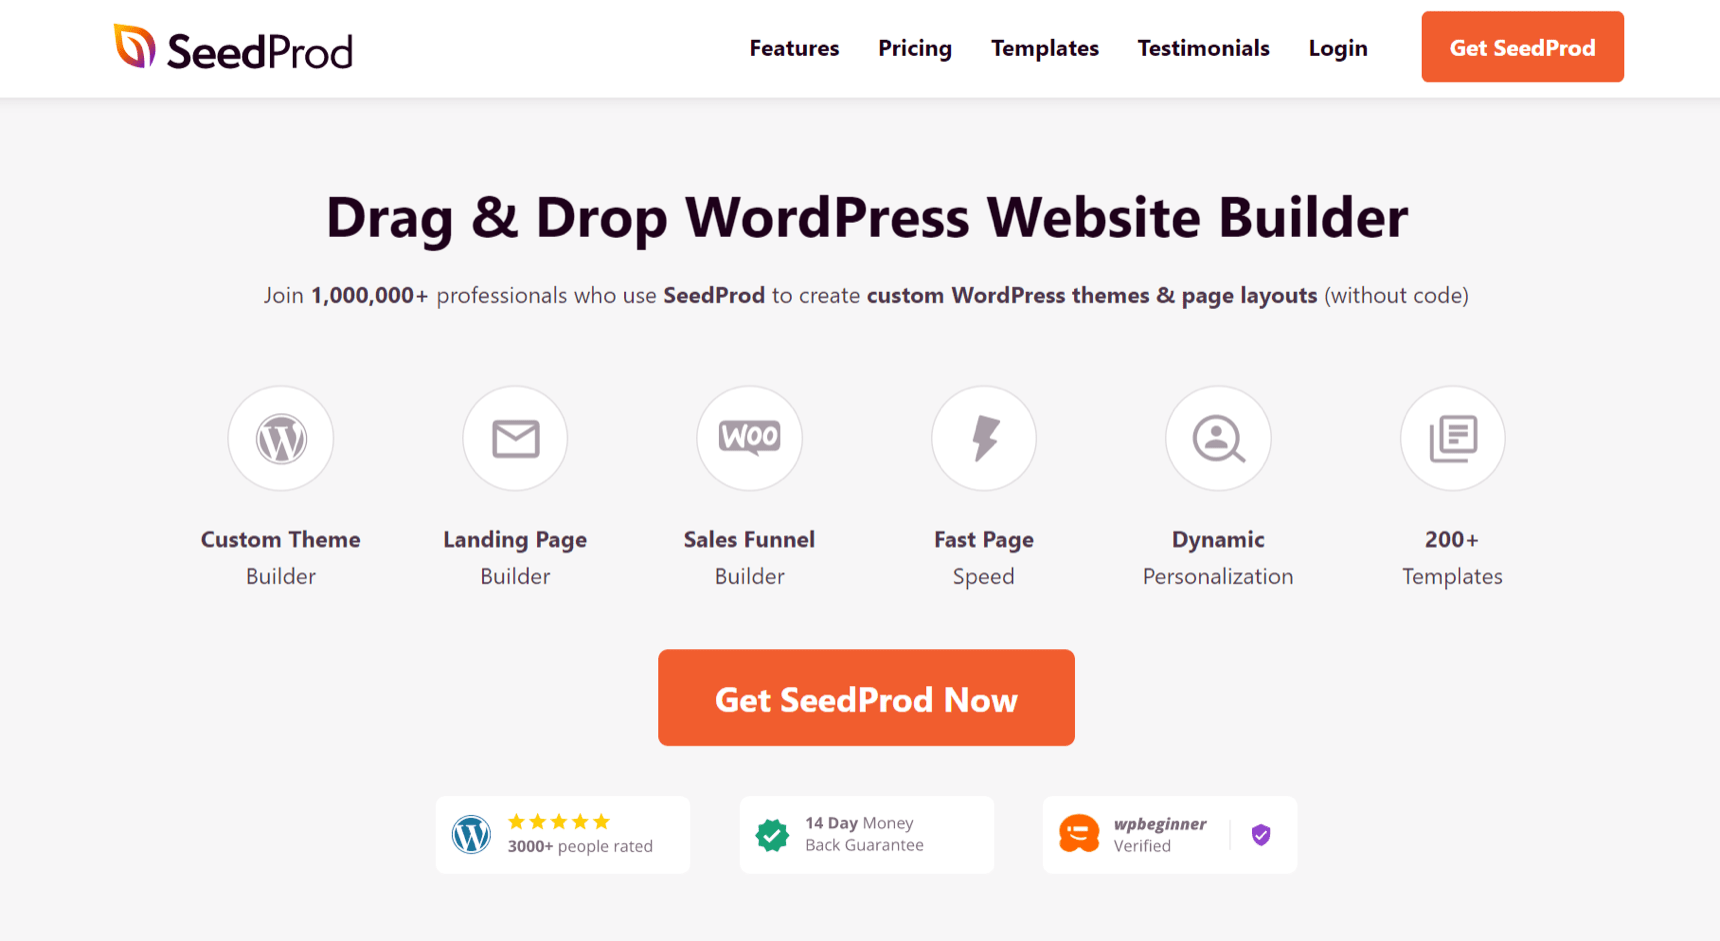 SeedProd WordPress website builder